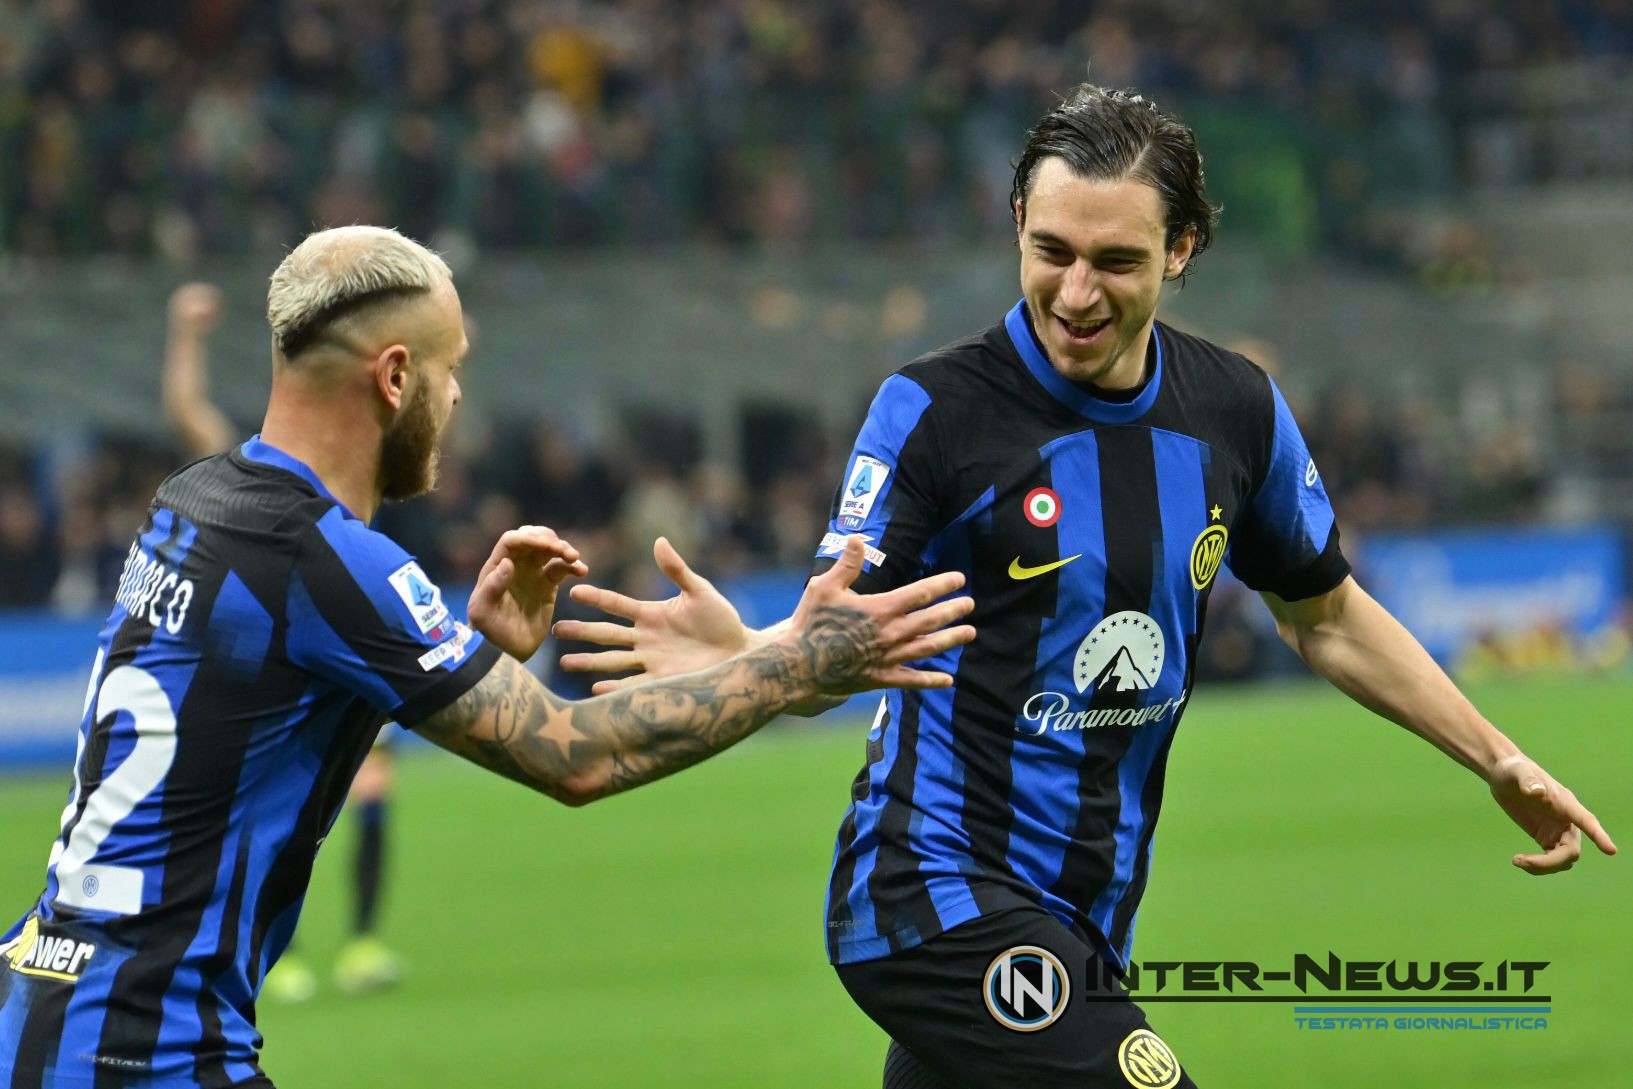 Matteo Darmian e Federico Dimarco in Inter-Napoli (Photo by Tommaso Fimiano/Inter-News.it ©)